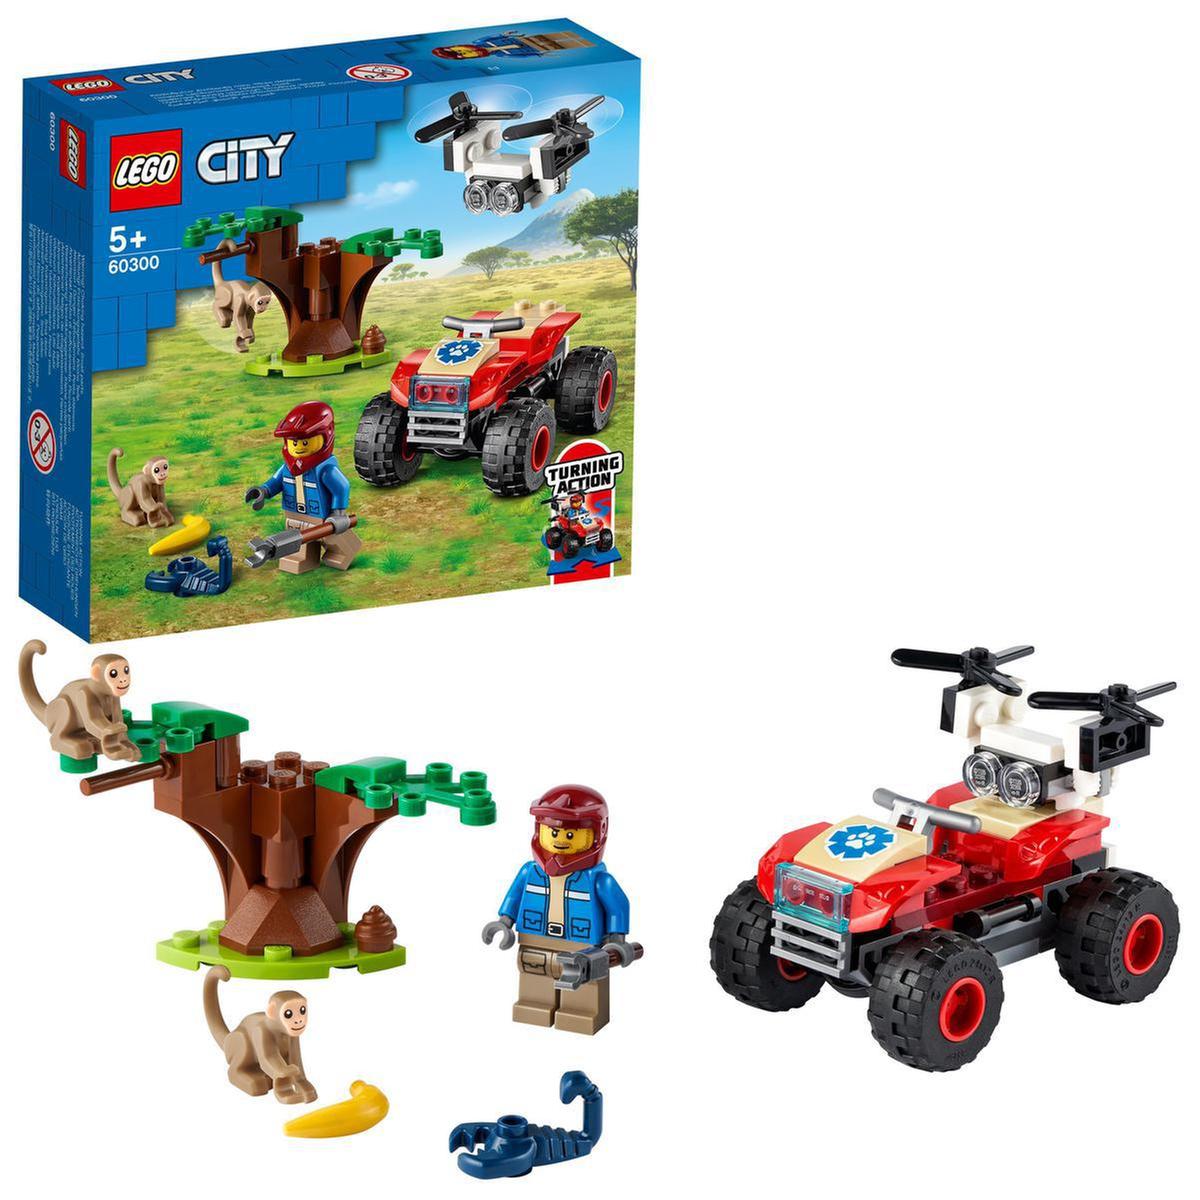 LEGO City - Quad de salvamento de animais selvagens - 60300 | LEGO CITY |  Loja de brinquedos e videojogos Online Toysrus